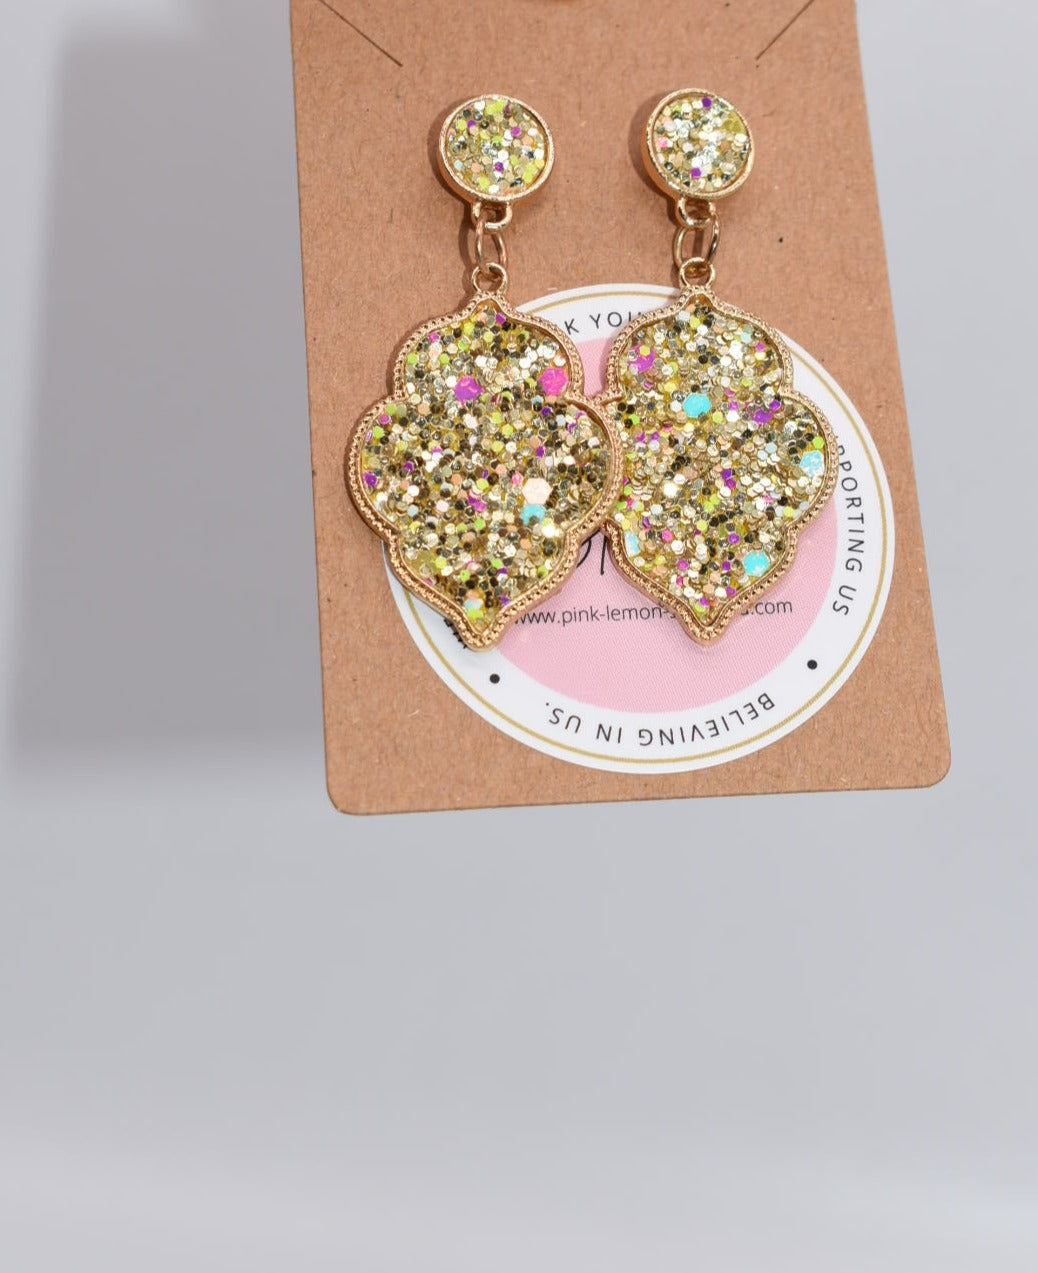 Statement Earrings: "It's All Gold" Glitter Drop Earrings